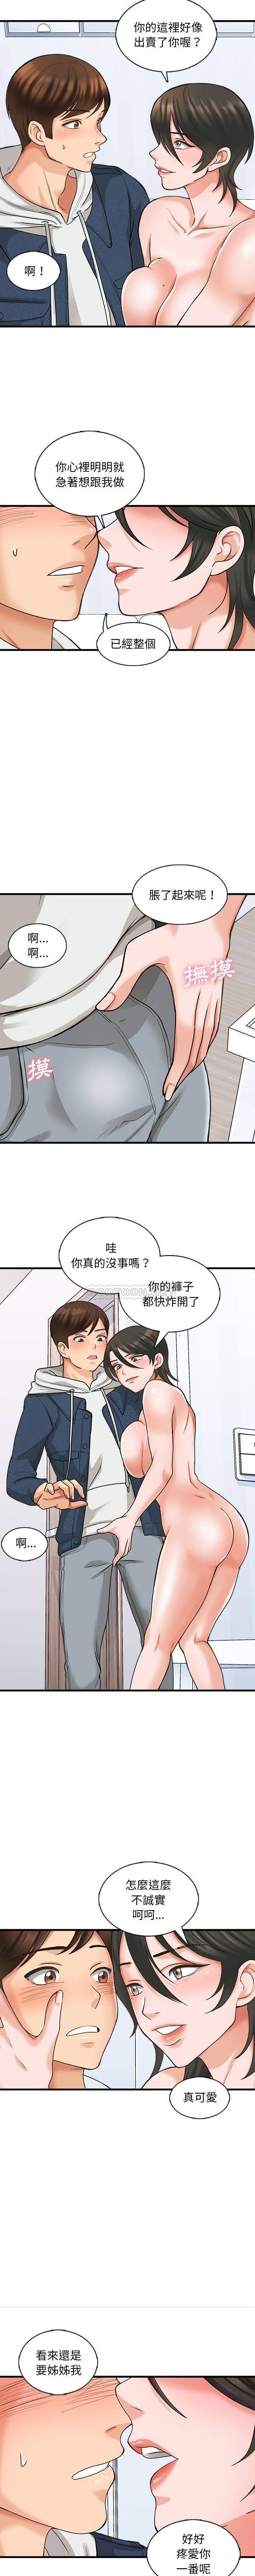 韩国污漫画 幸福公寓 第6话 4